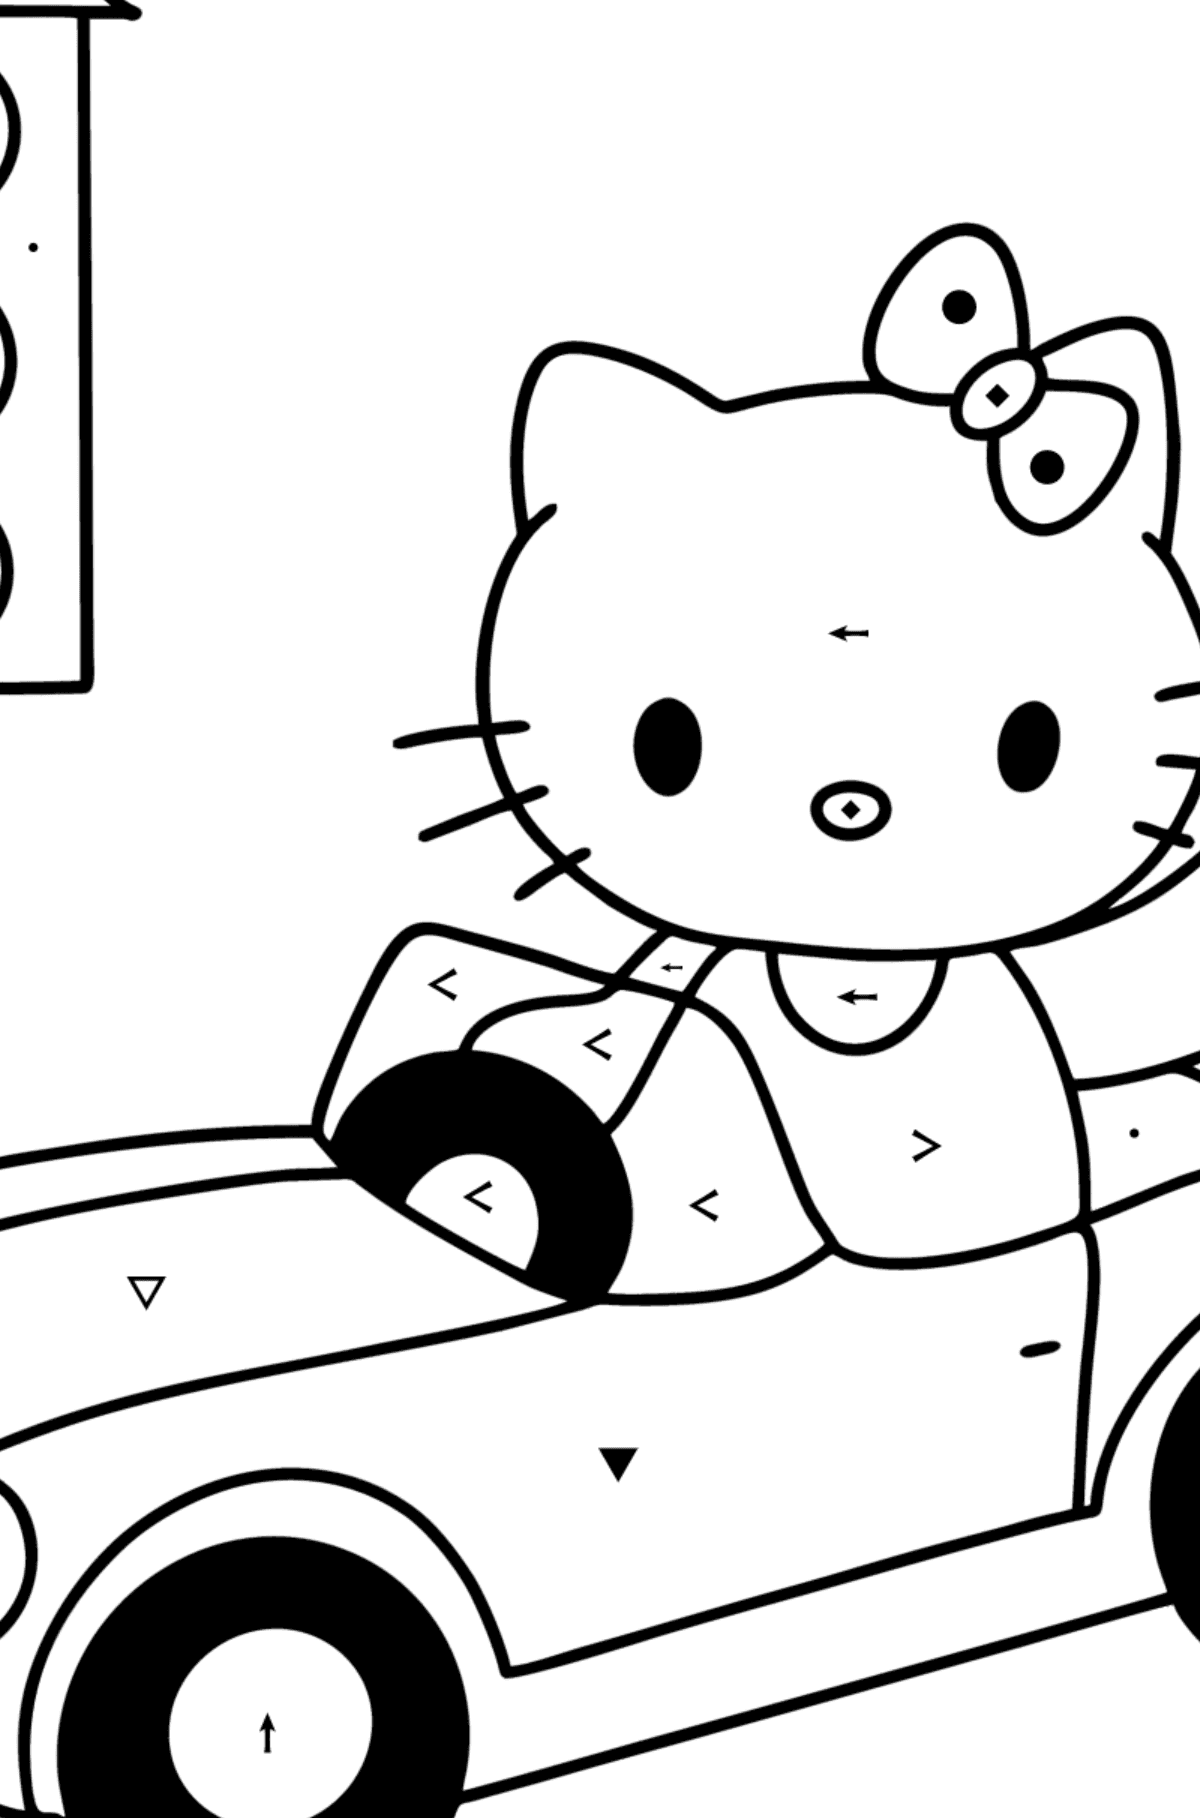 Tegning til fargelegging Hello Kitty og bil - Fargelegge etter symboler for barn